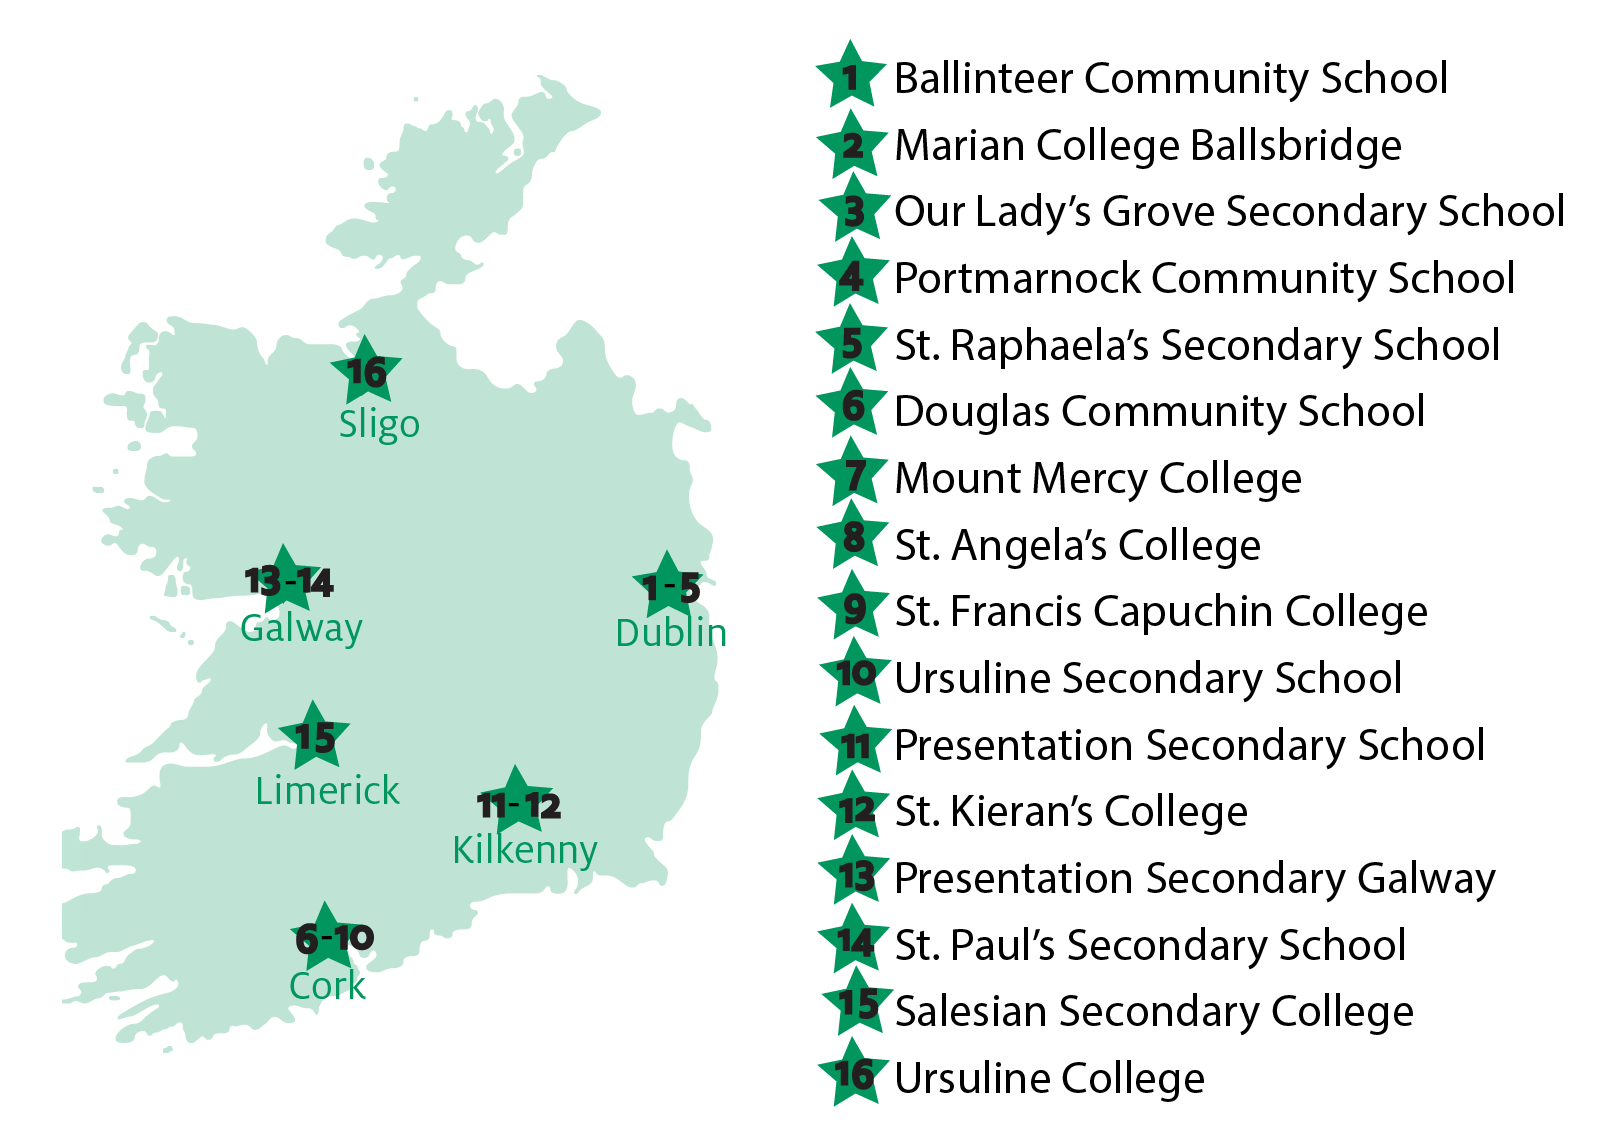 Regionen und Schulen für Schüleraustausch in Irland